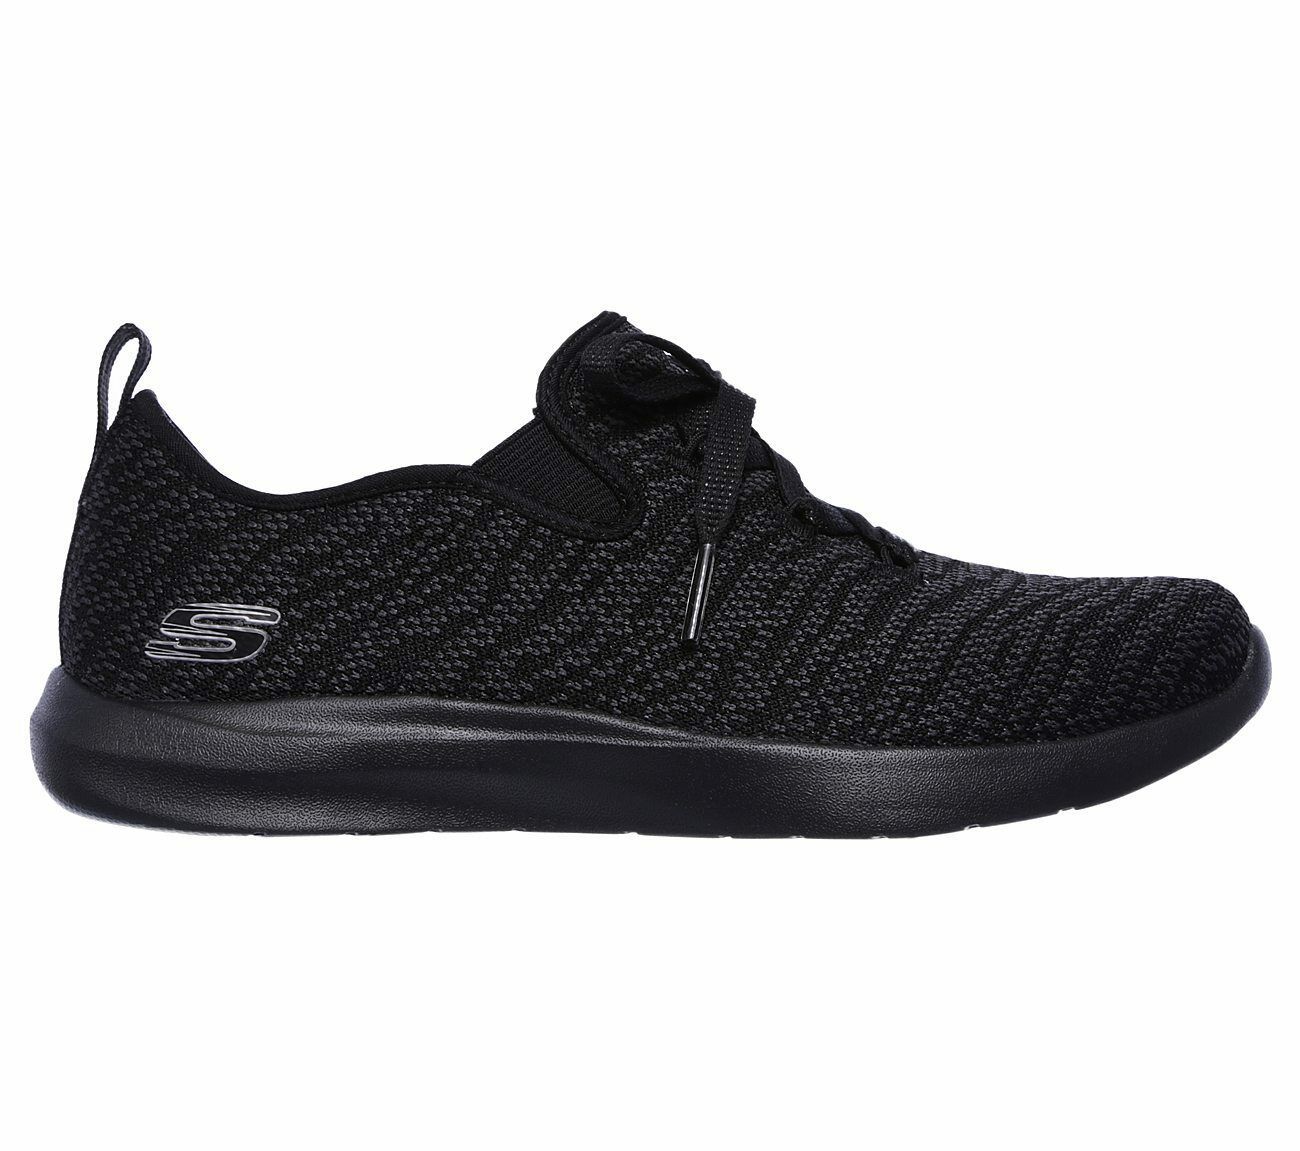 Skechers Comfort Shoes Black Memory Foam Women's Slip On Casual Knit ...